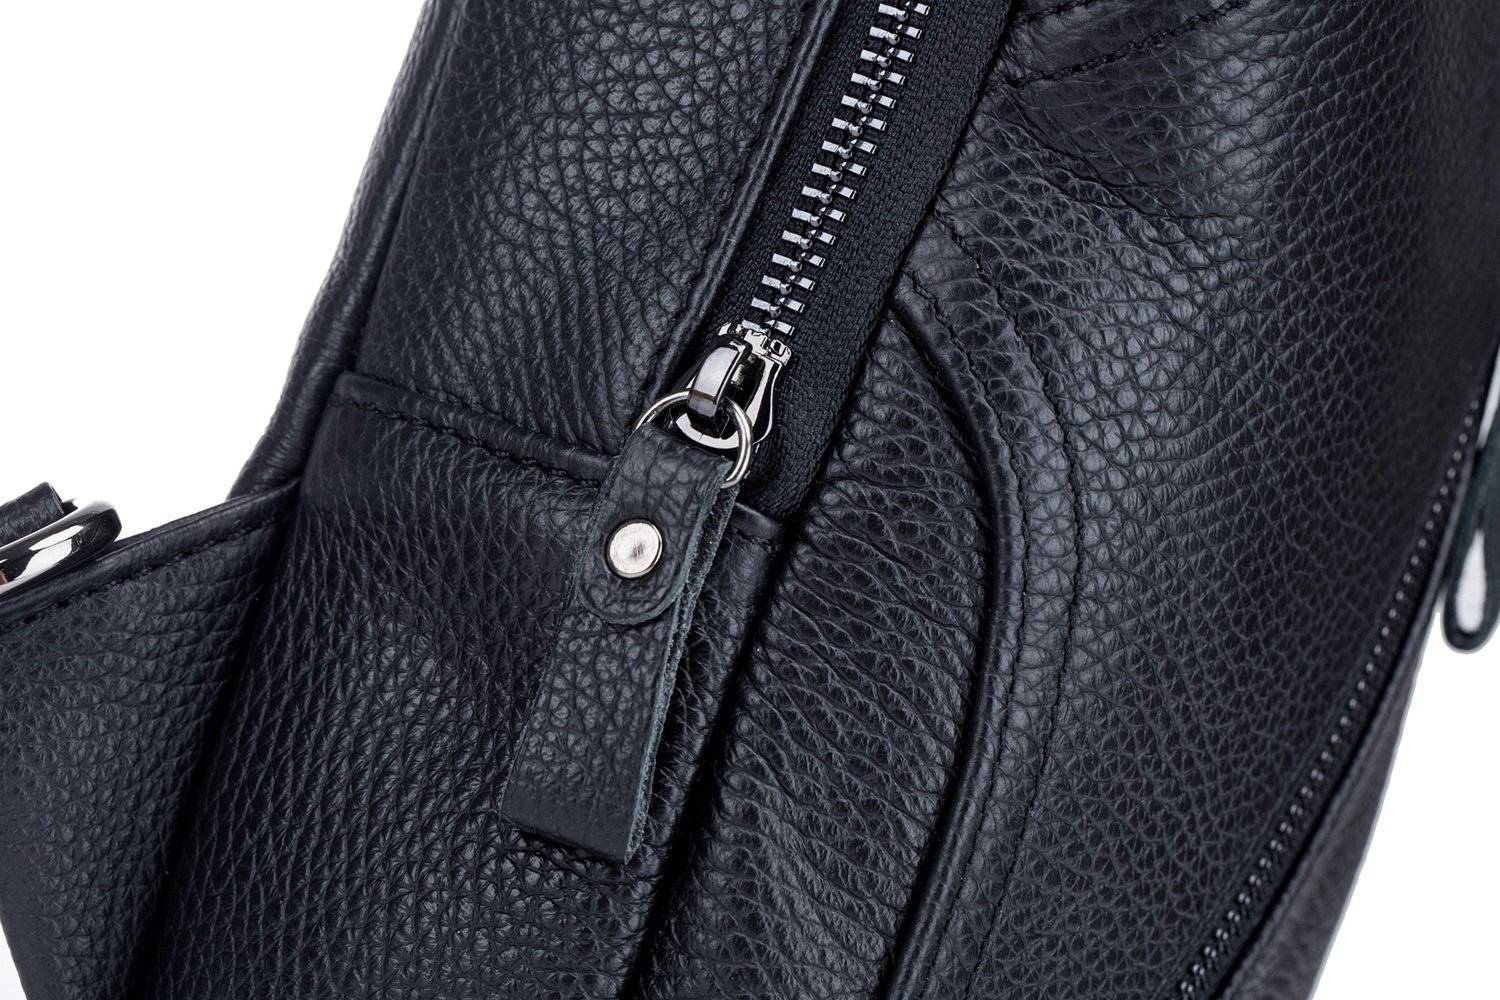 Bullcaptain leather sling bag